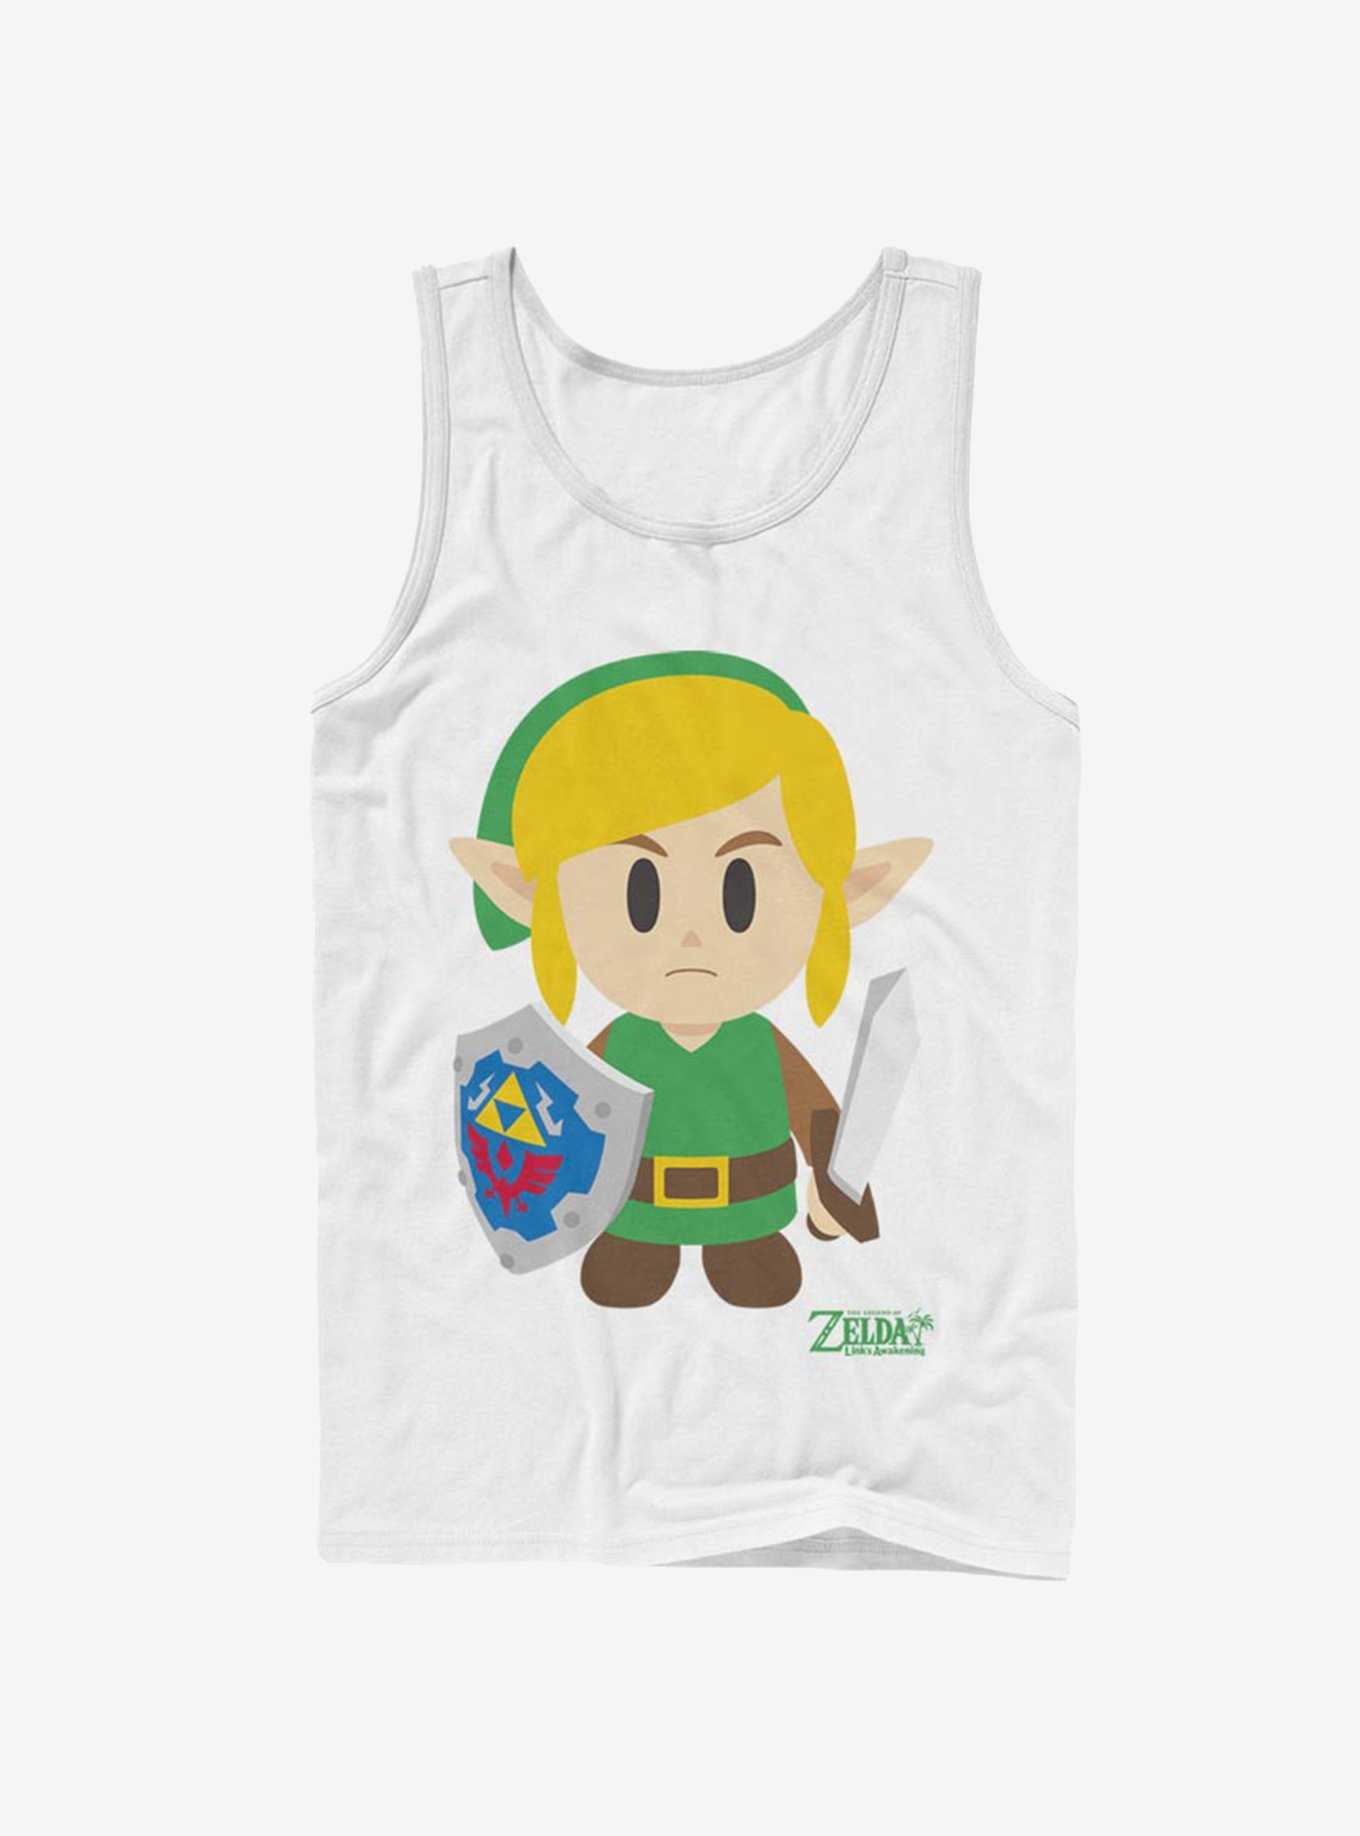 Nintendo The Legend of Zelda: Link's Awakening Link Avatar Color Tank, , hi-res